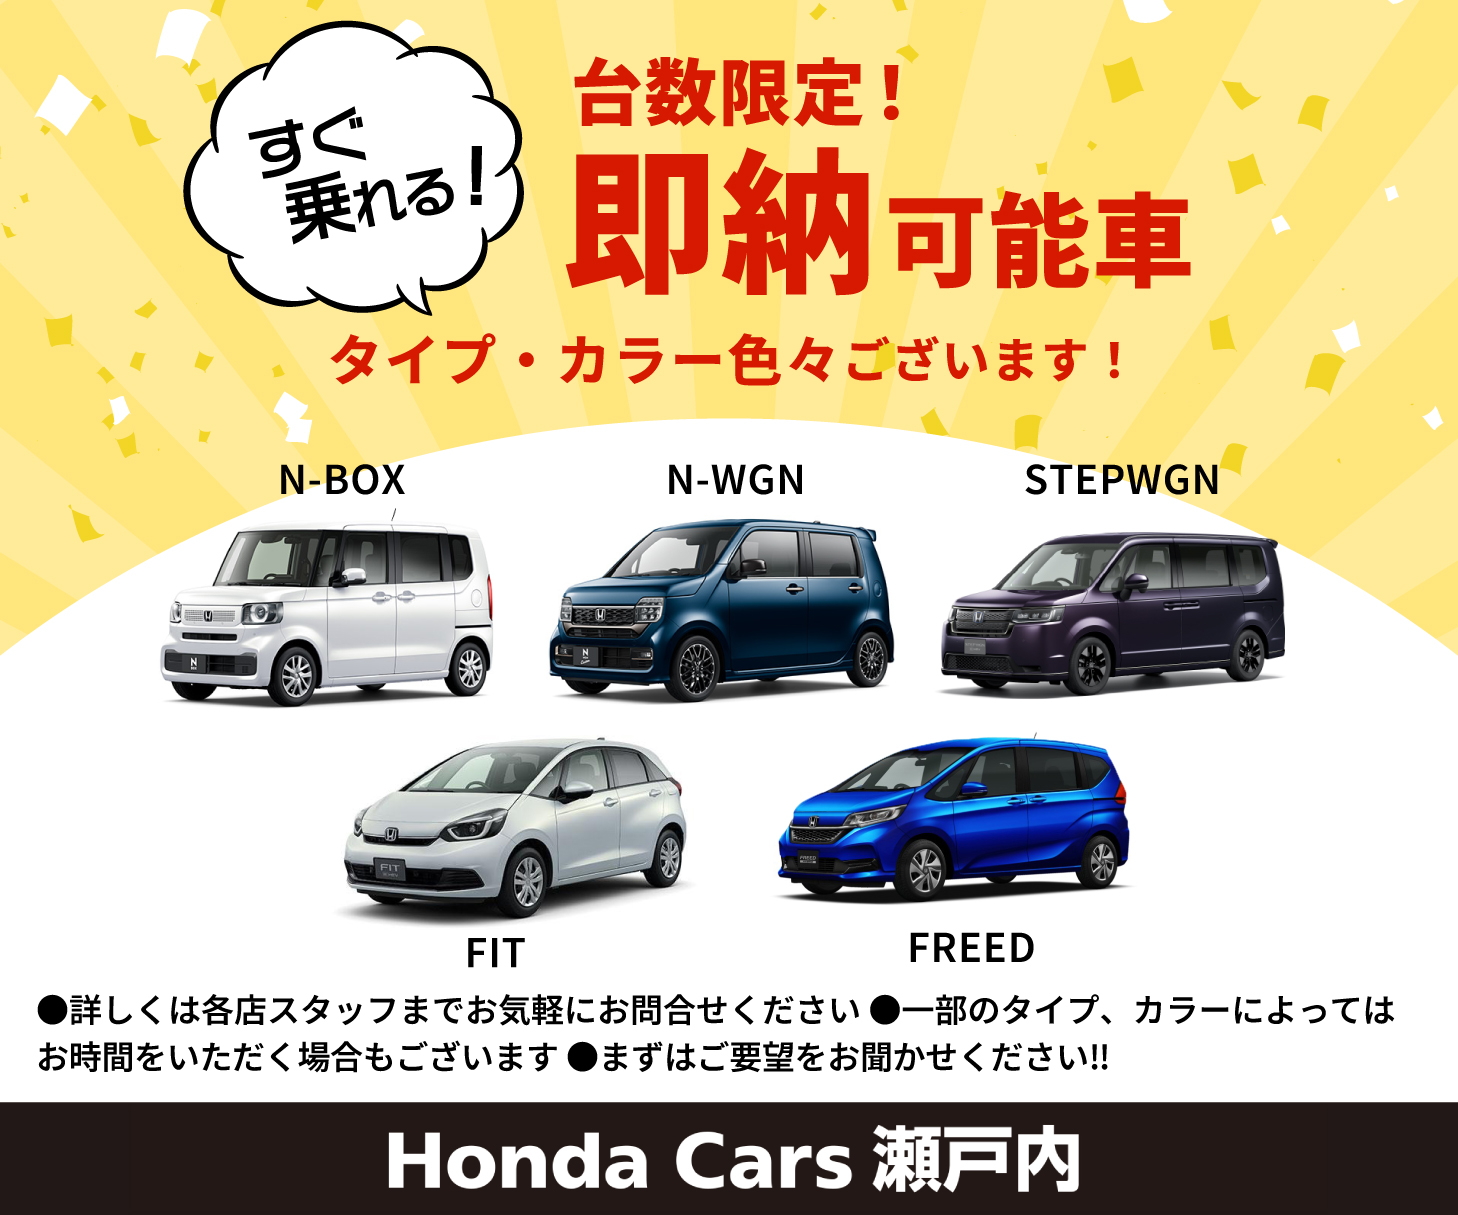 すぐ乗れる！台数限定！即納可能車 タイプ・カラー 色々ございます！ N-BOX N-WGN STEPWGN FIT FREED 詳しくは各店スタッフまでお気軽にお問合せください 一部のタイプ、カラーによってはお時間をいただく場合もございます まずはご要望をお聞かせください!! Honda Cars 瀬戸内